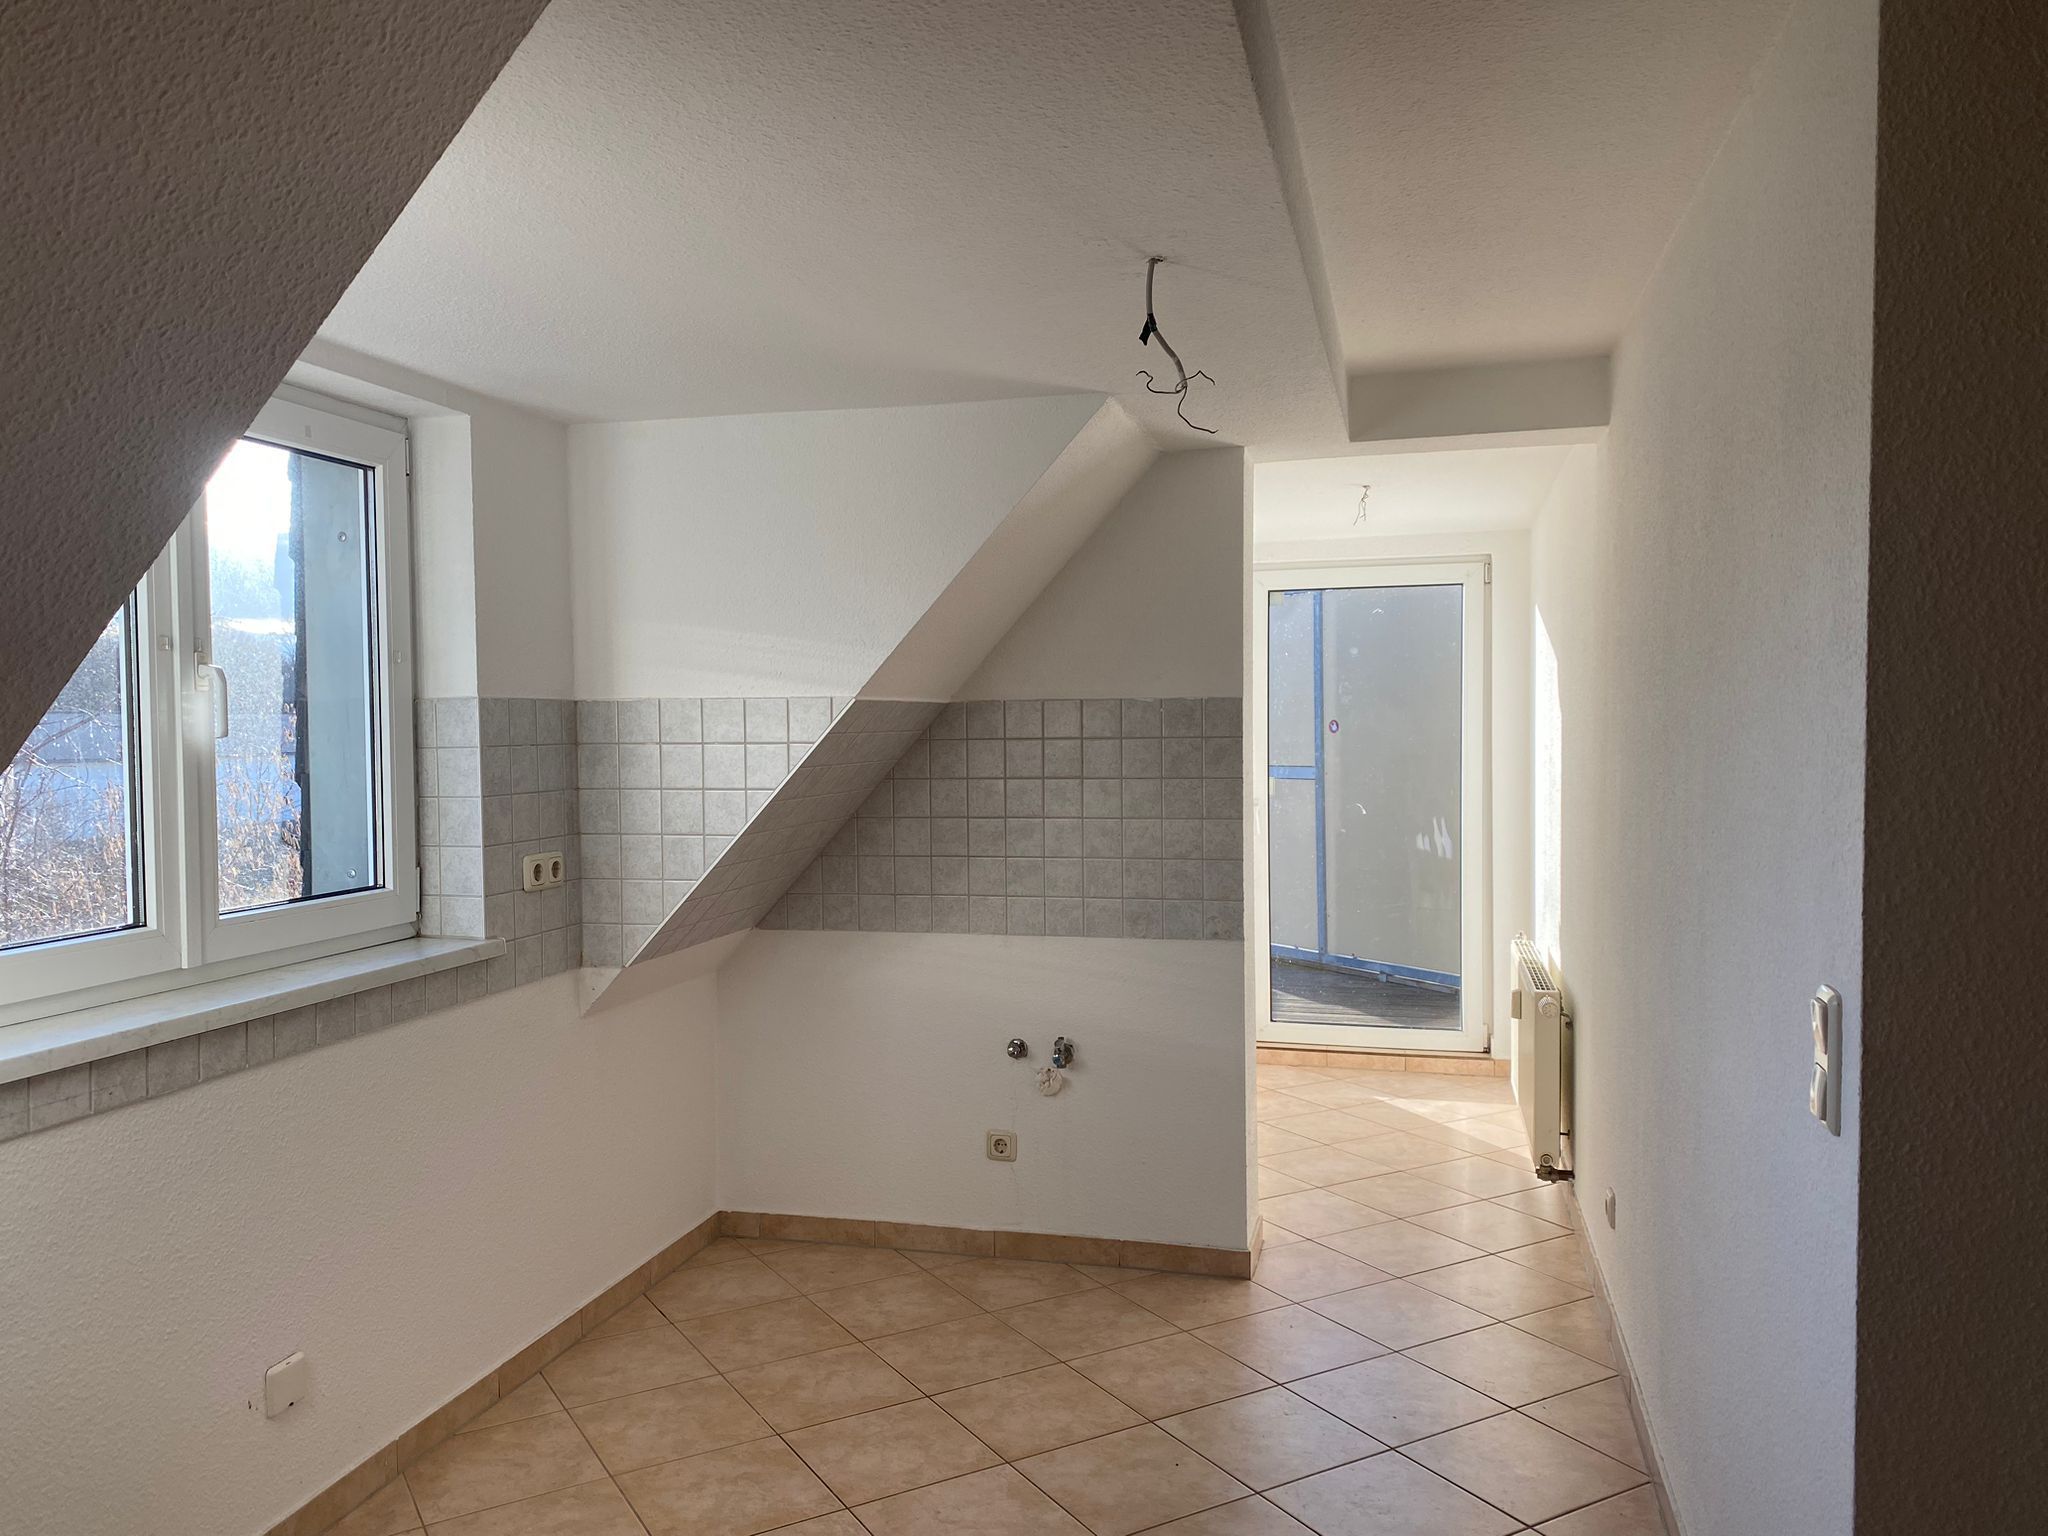 gemütliche 2- Raumwohnung mit Balkon in Reichenbach ! 02894 Reichenbach, Dachgeschosswohnung